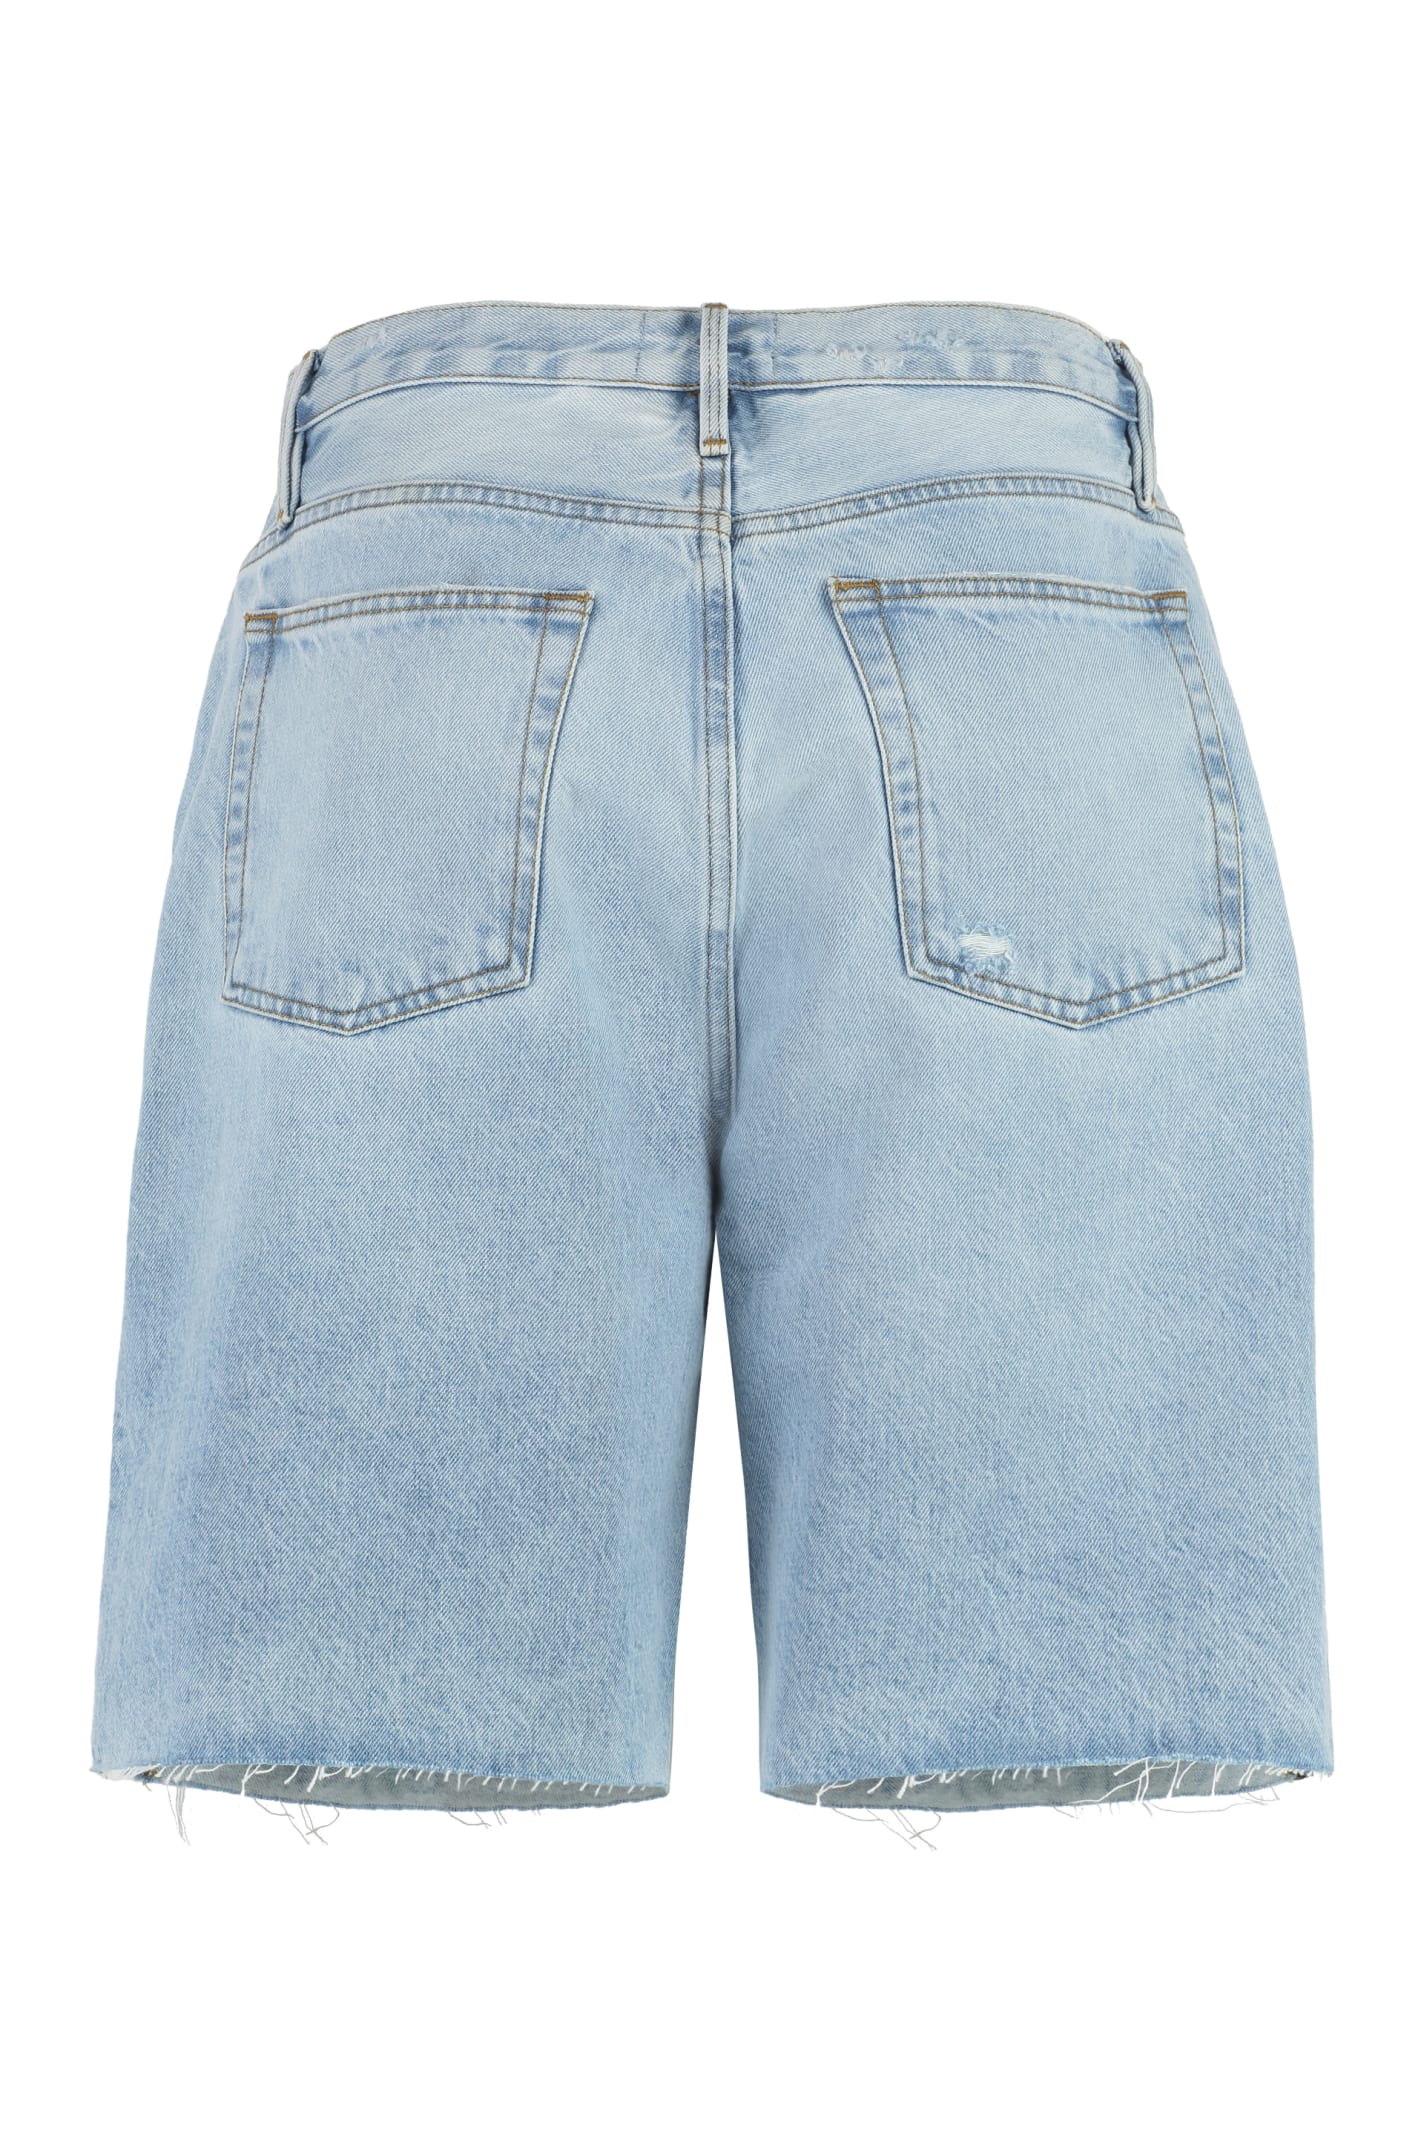 Shop Frame Denim Shorts In Rssm Jeans